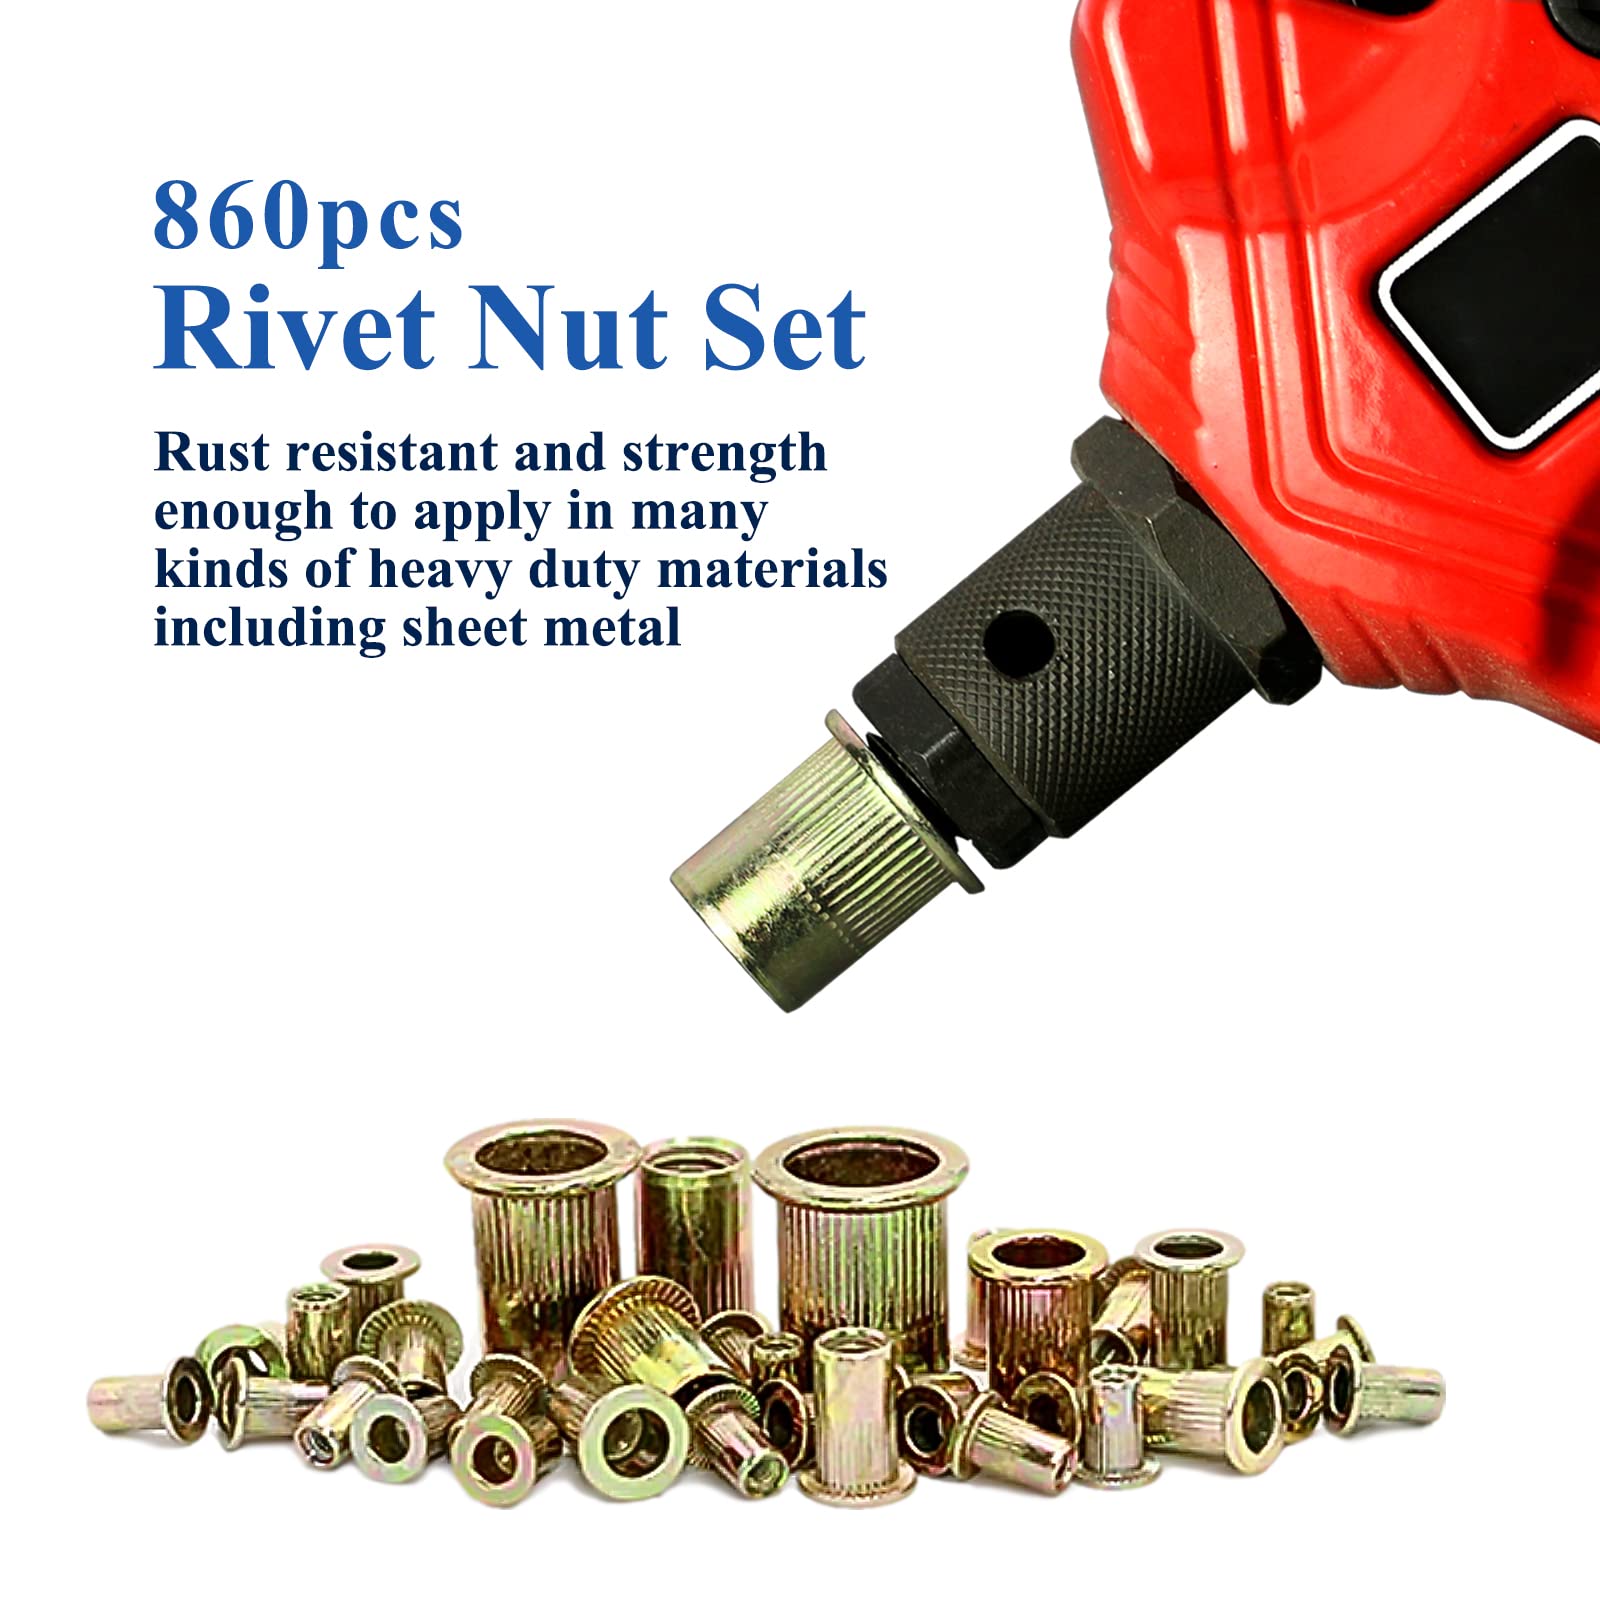 Mua 860pcs Rivet Nut Assortment Kit 3mm 12mm Metric Carbon Steel Flat Head Threaded Insert 